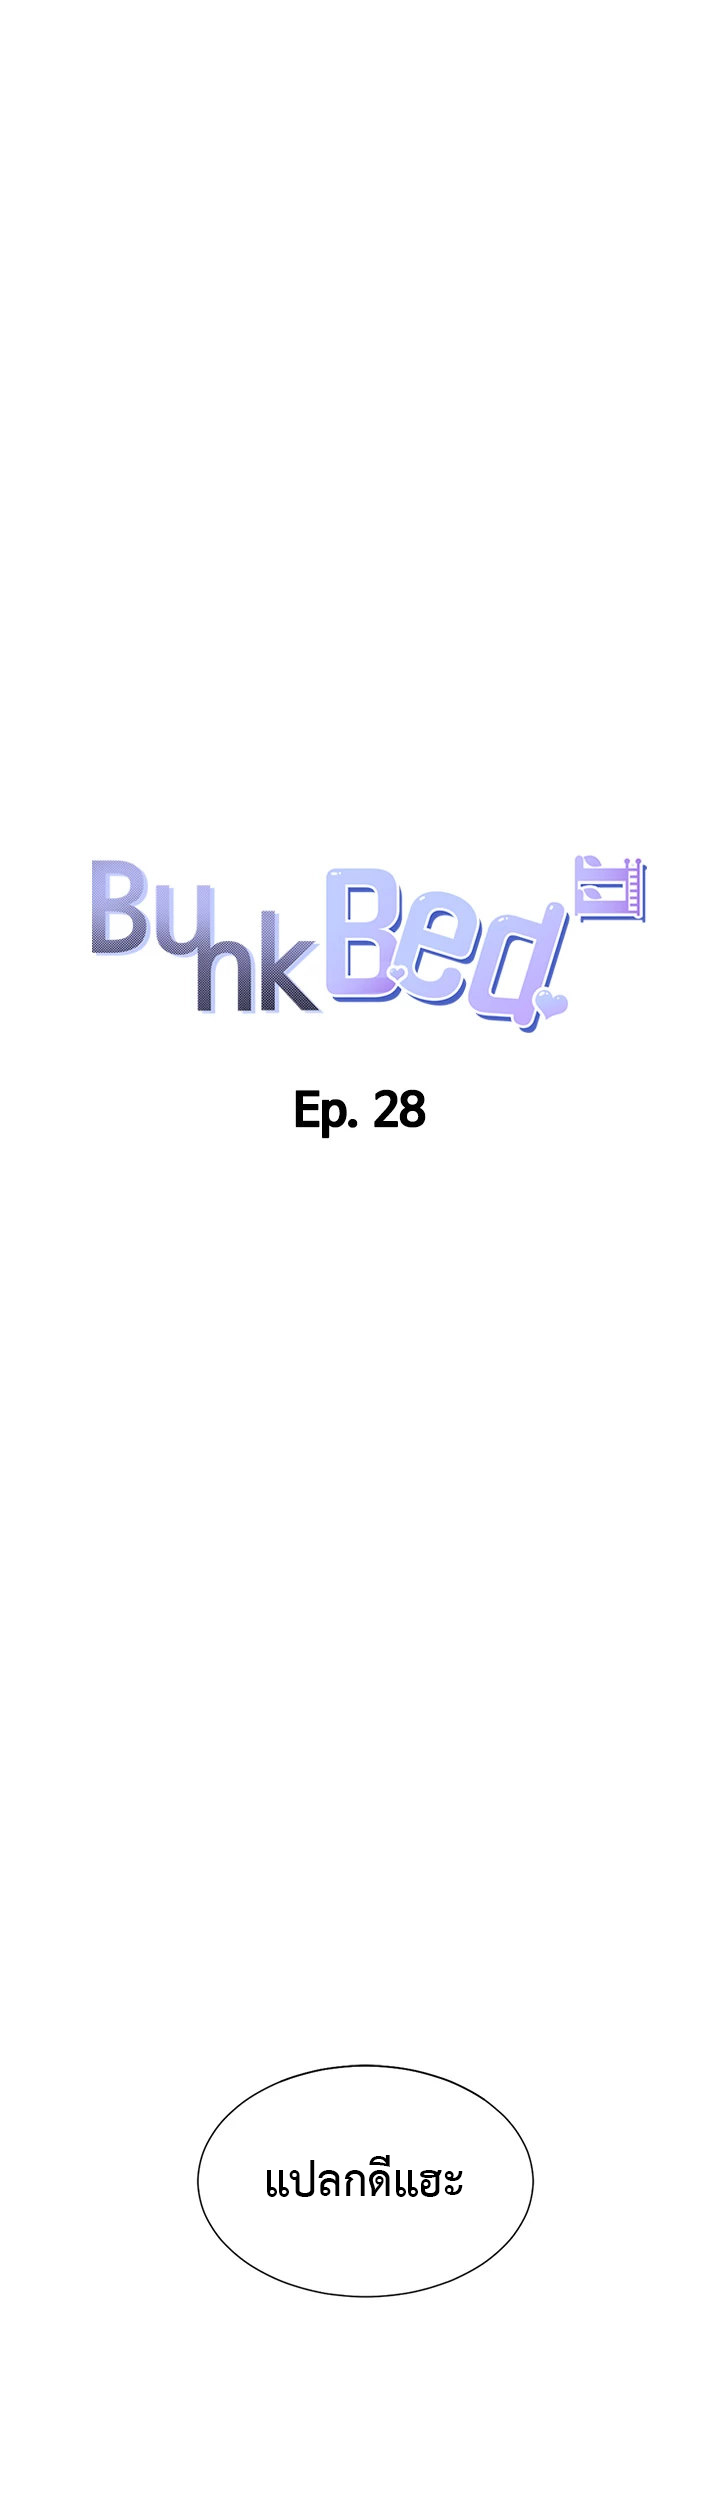 Bunk Beds 28 (21)